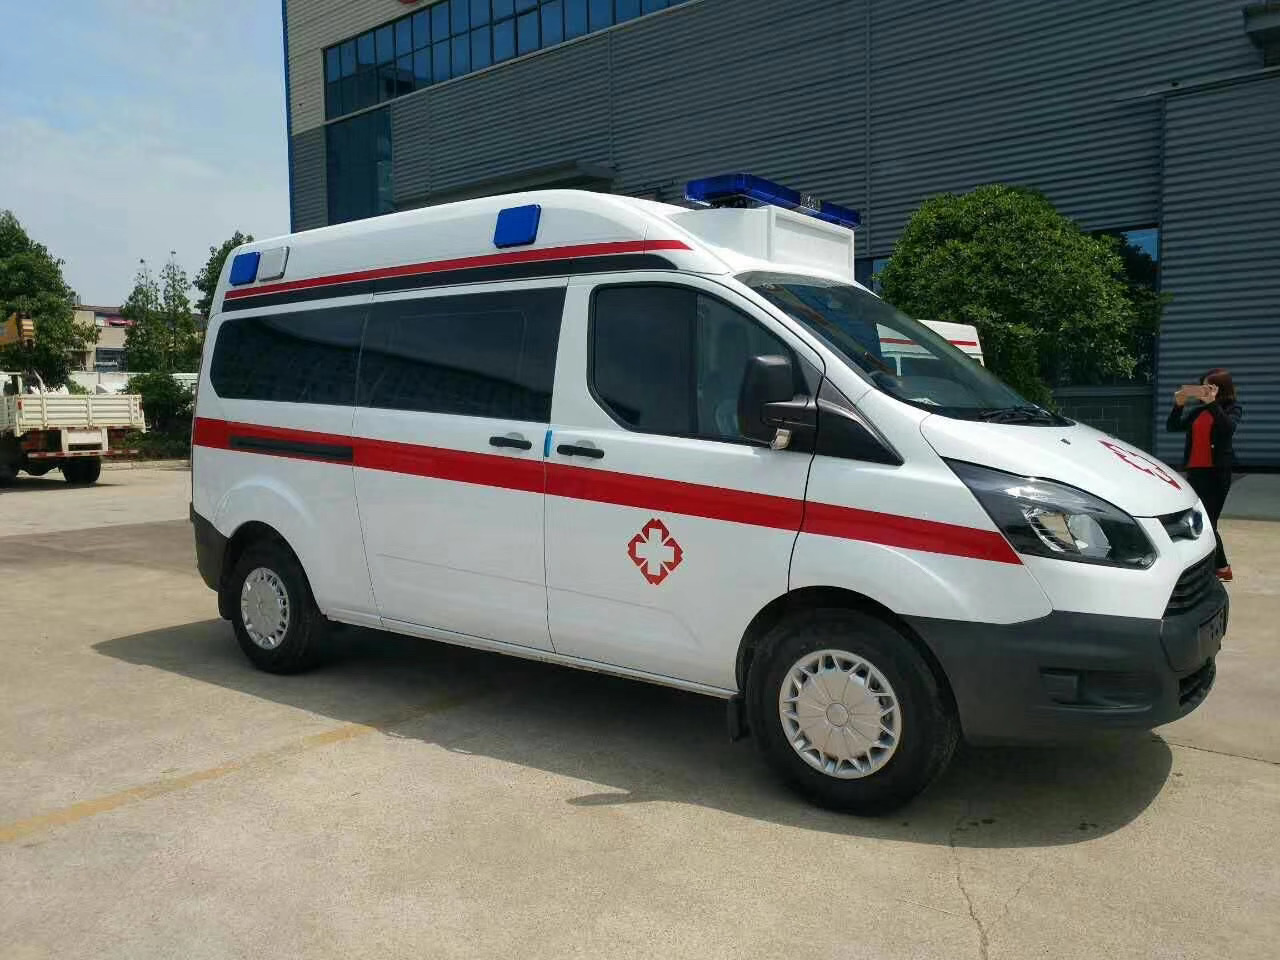 泗阳县出院转院救护车